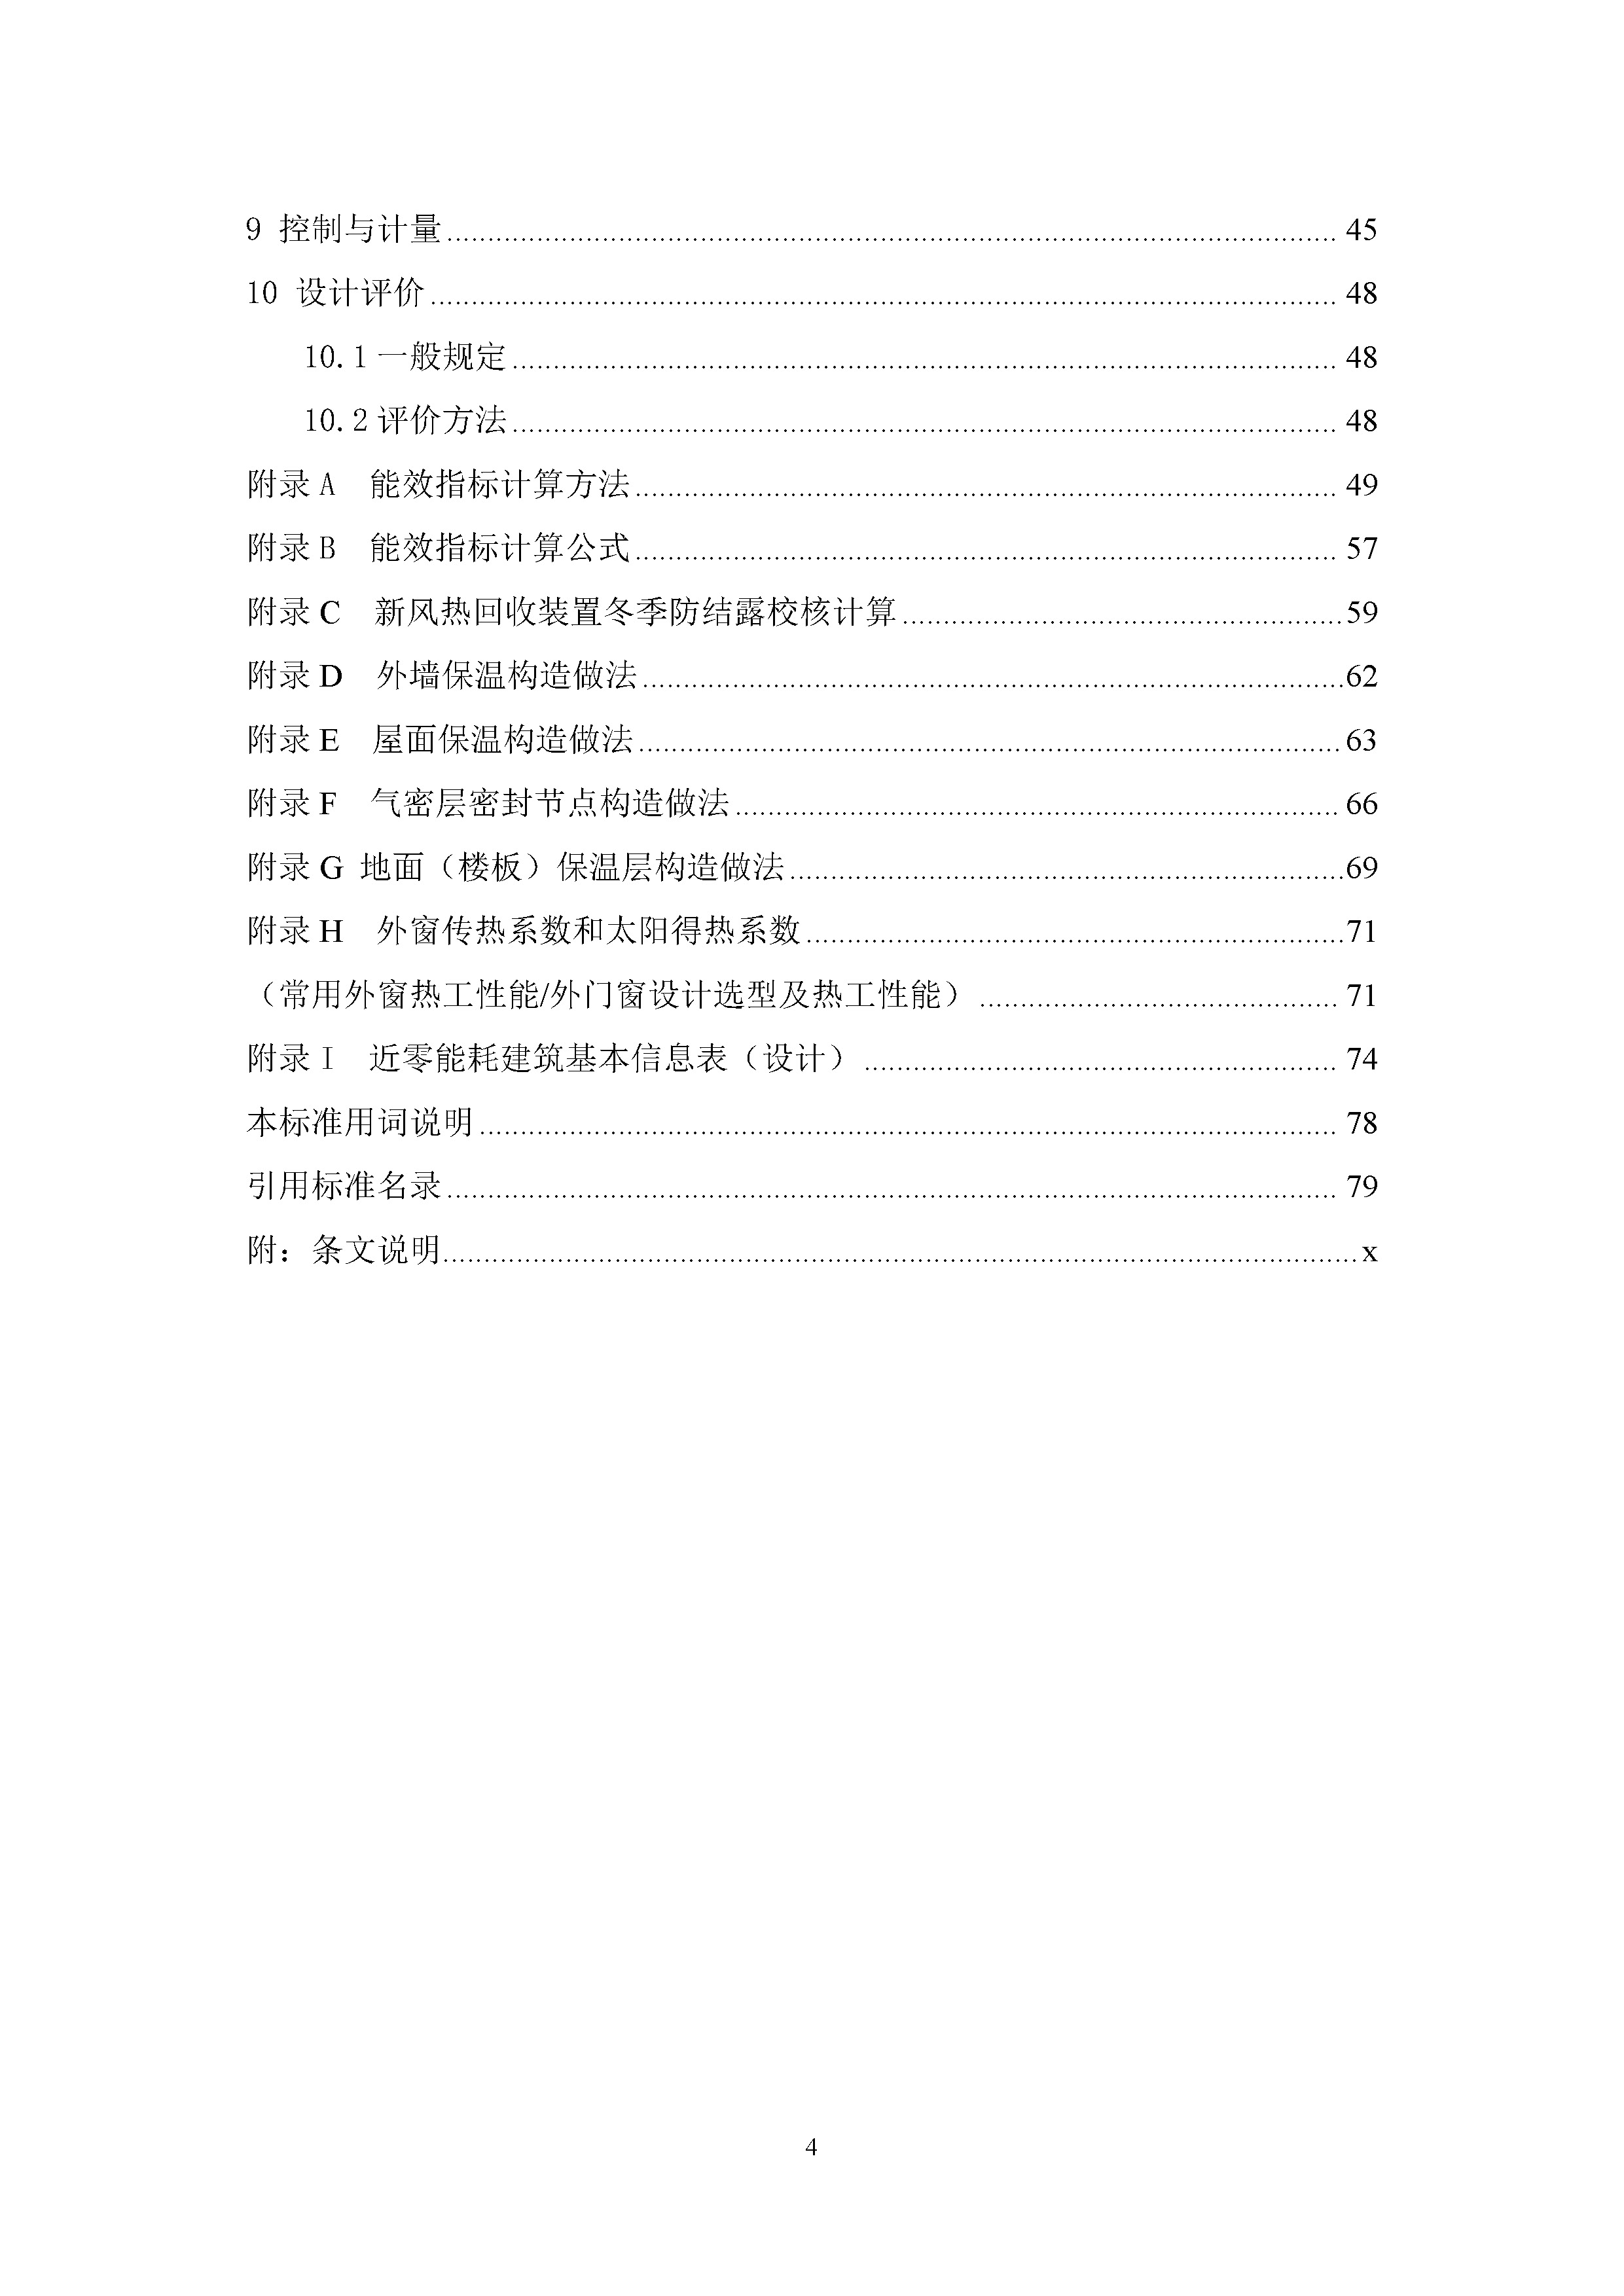 陕西省《近零能耗建筑节能设计及评价标准（征求意见稿）》_页面_05.jpg